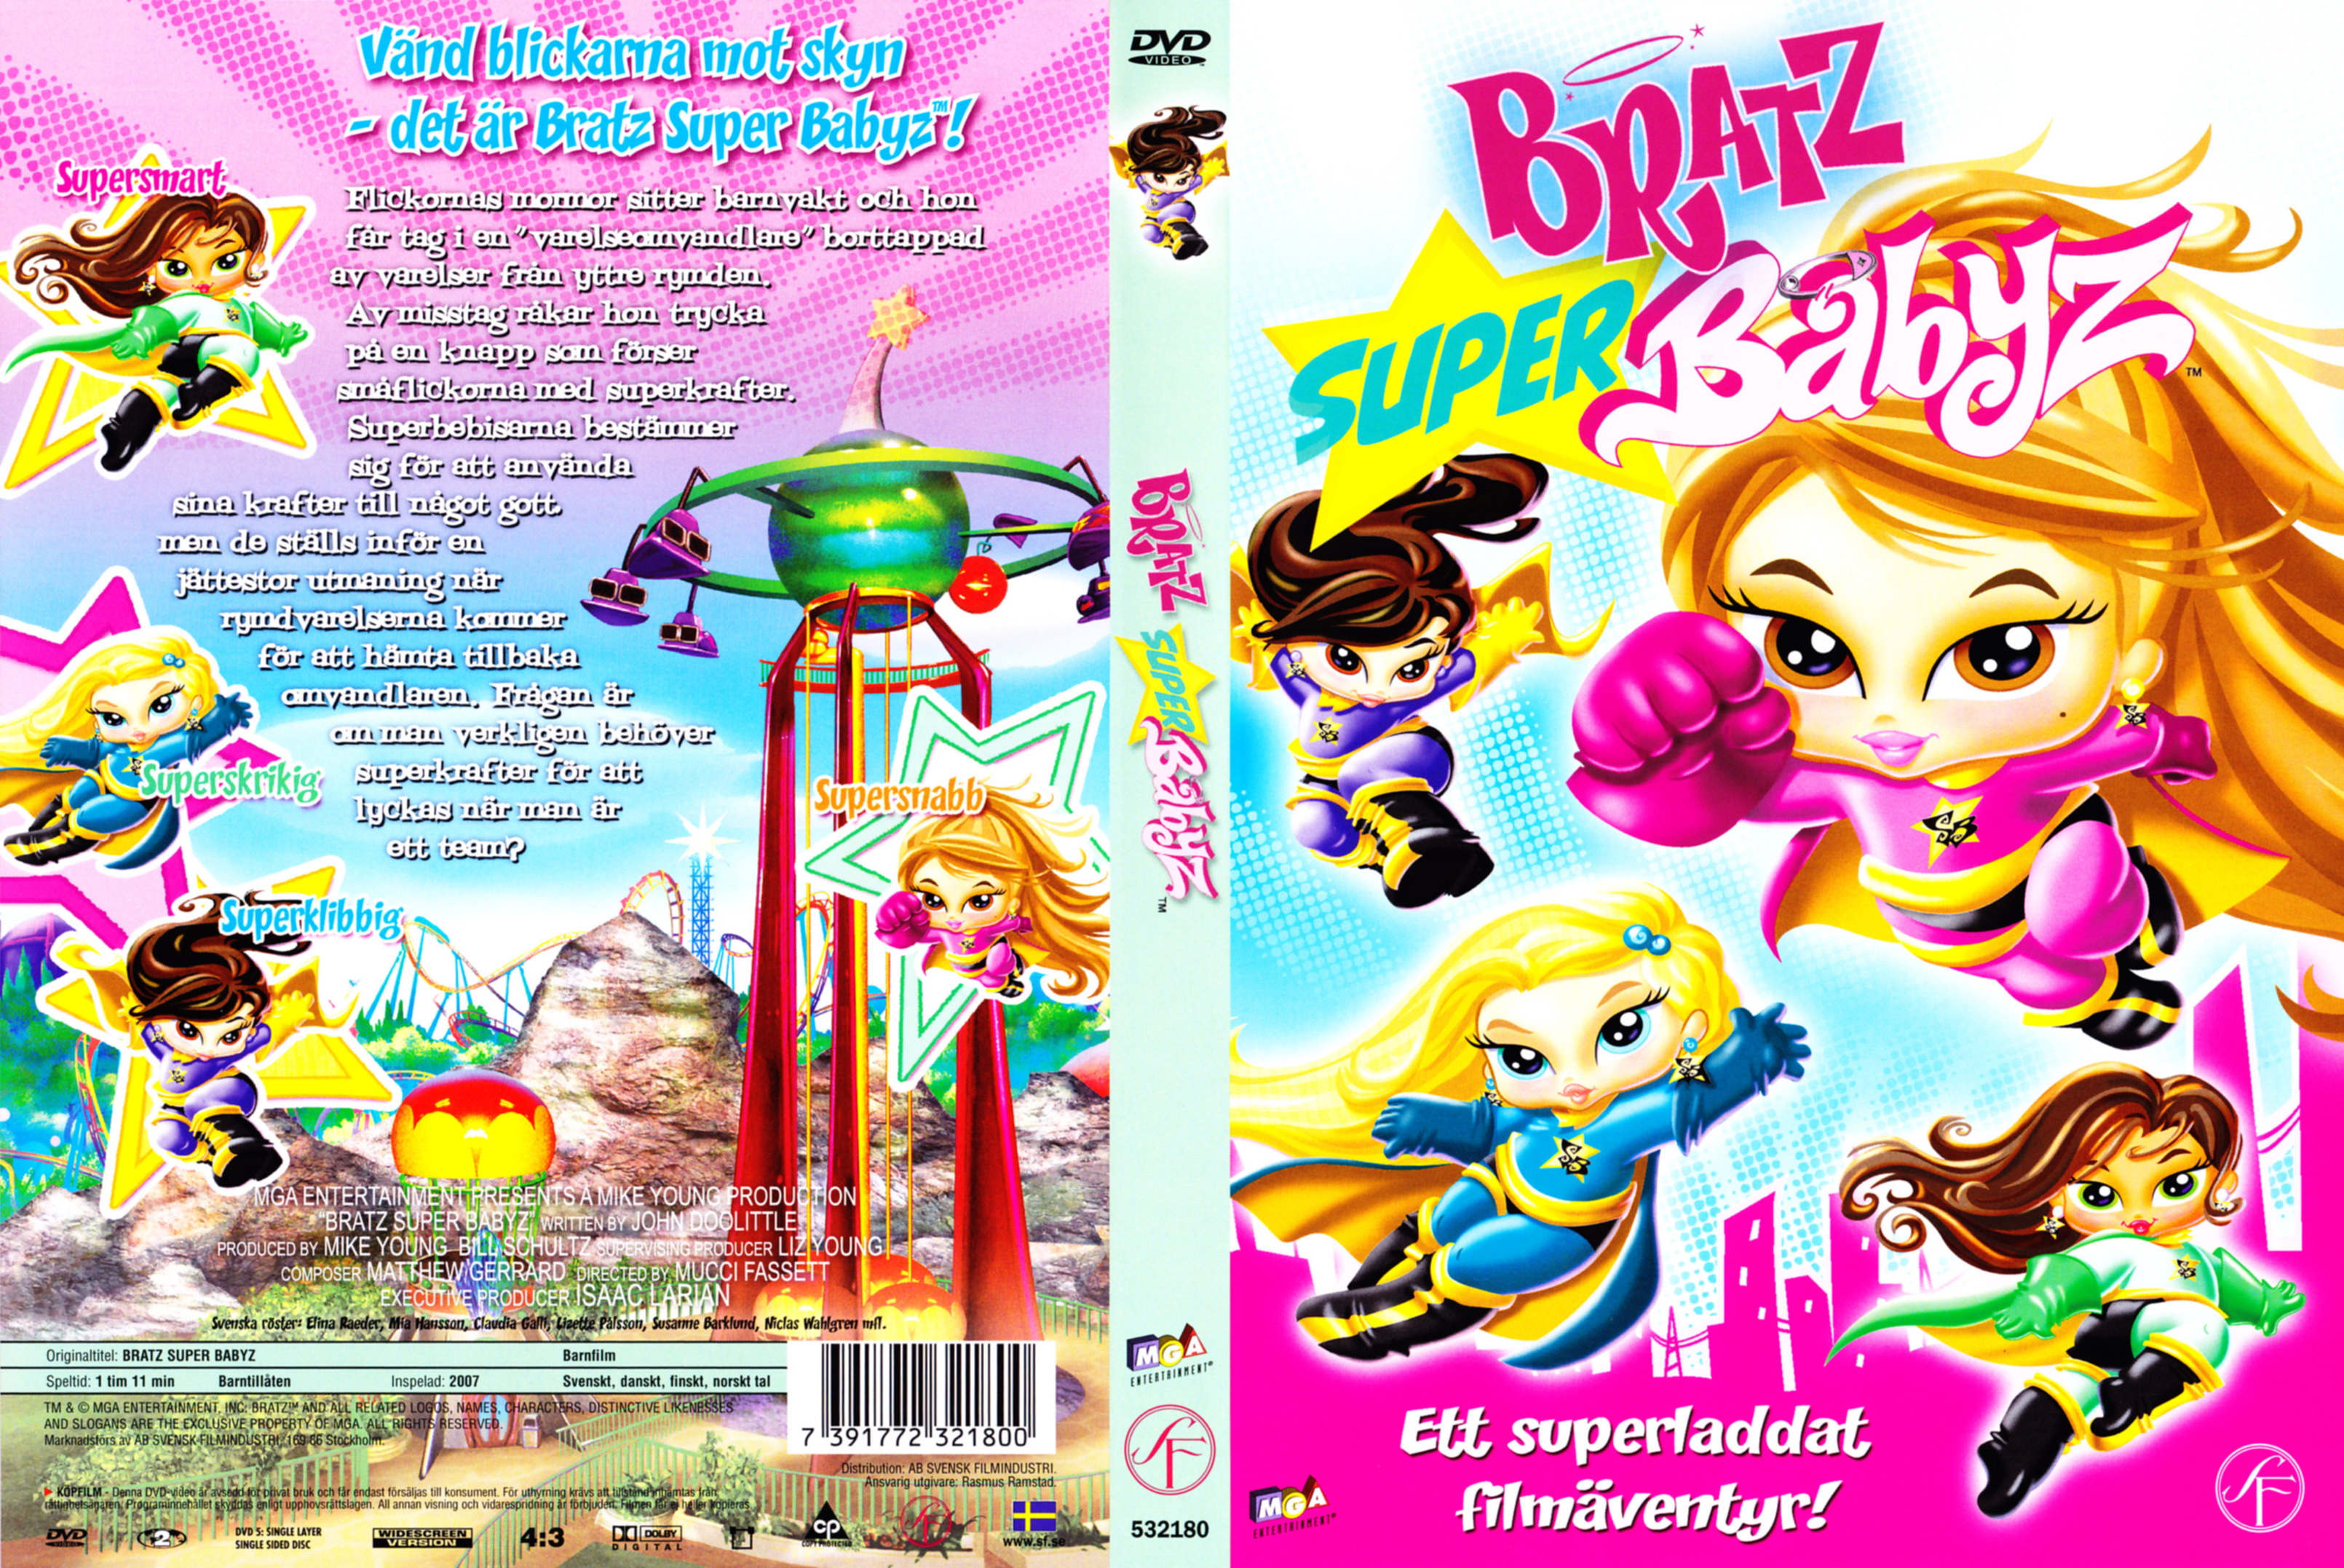 Bratz Super Babyz Movie | vlr.eng.br